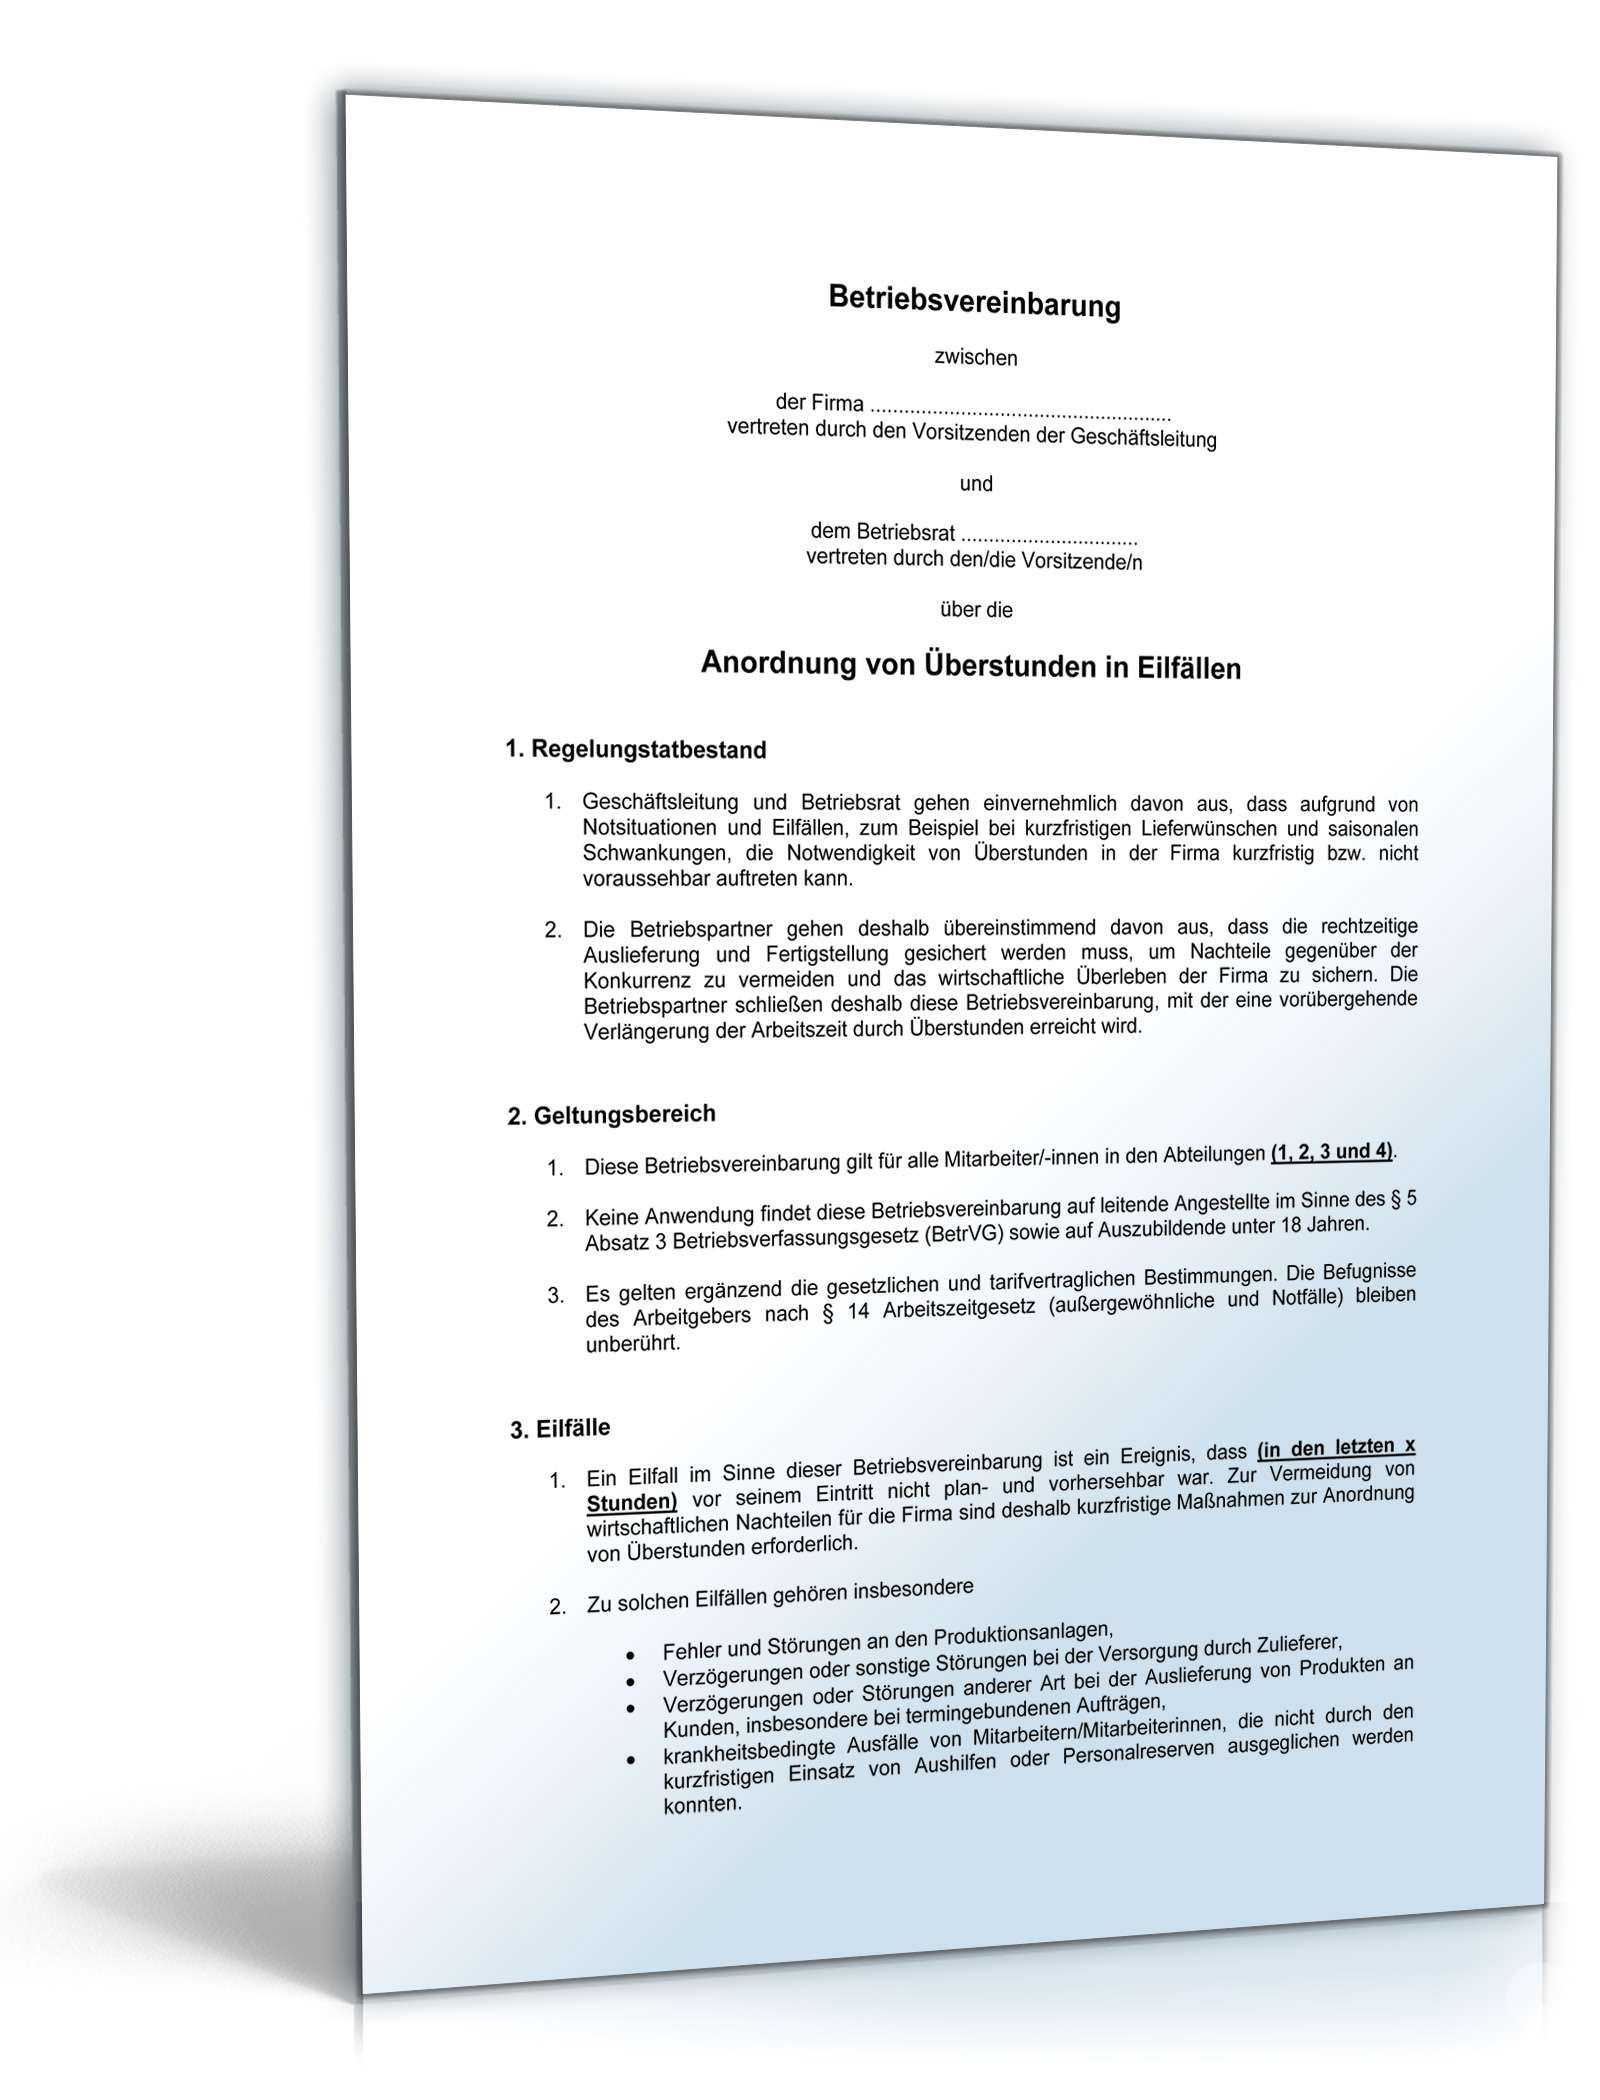 Hauptbild des Produkts: Betriebsvereinbarung zur Anordnung von Überstunden in Eilfällen